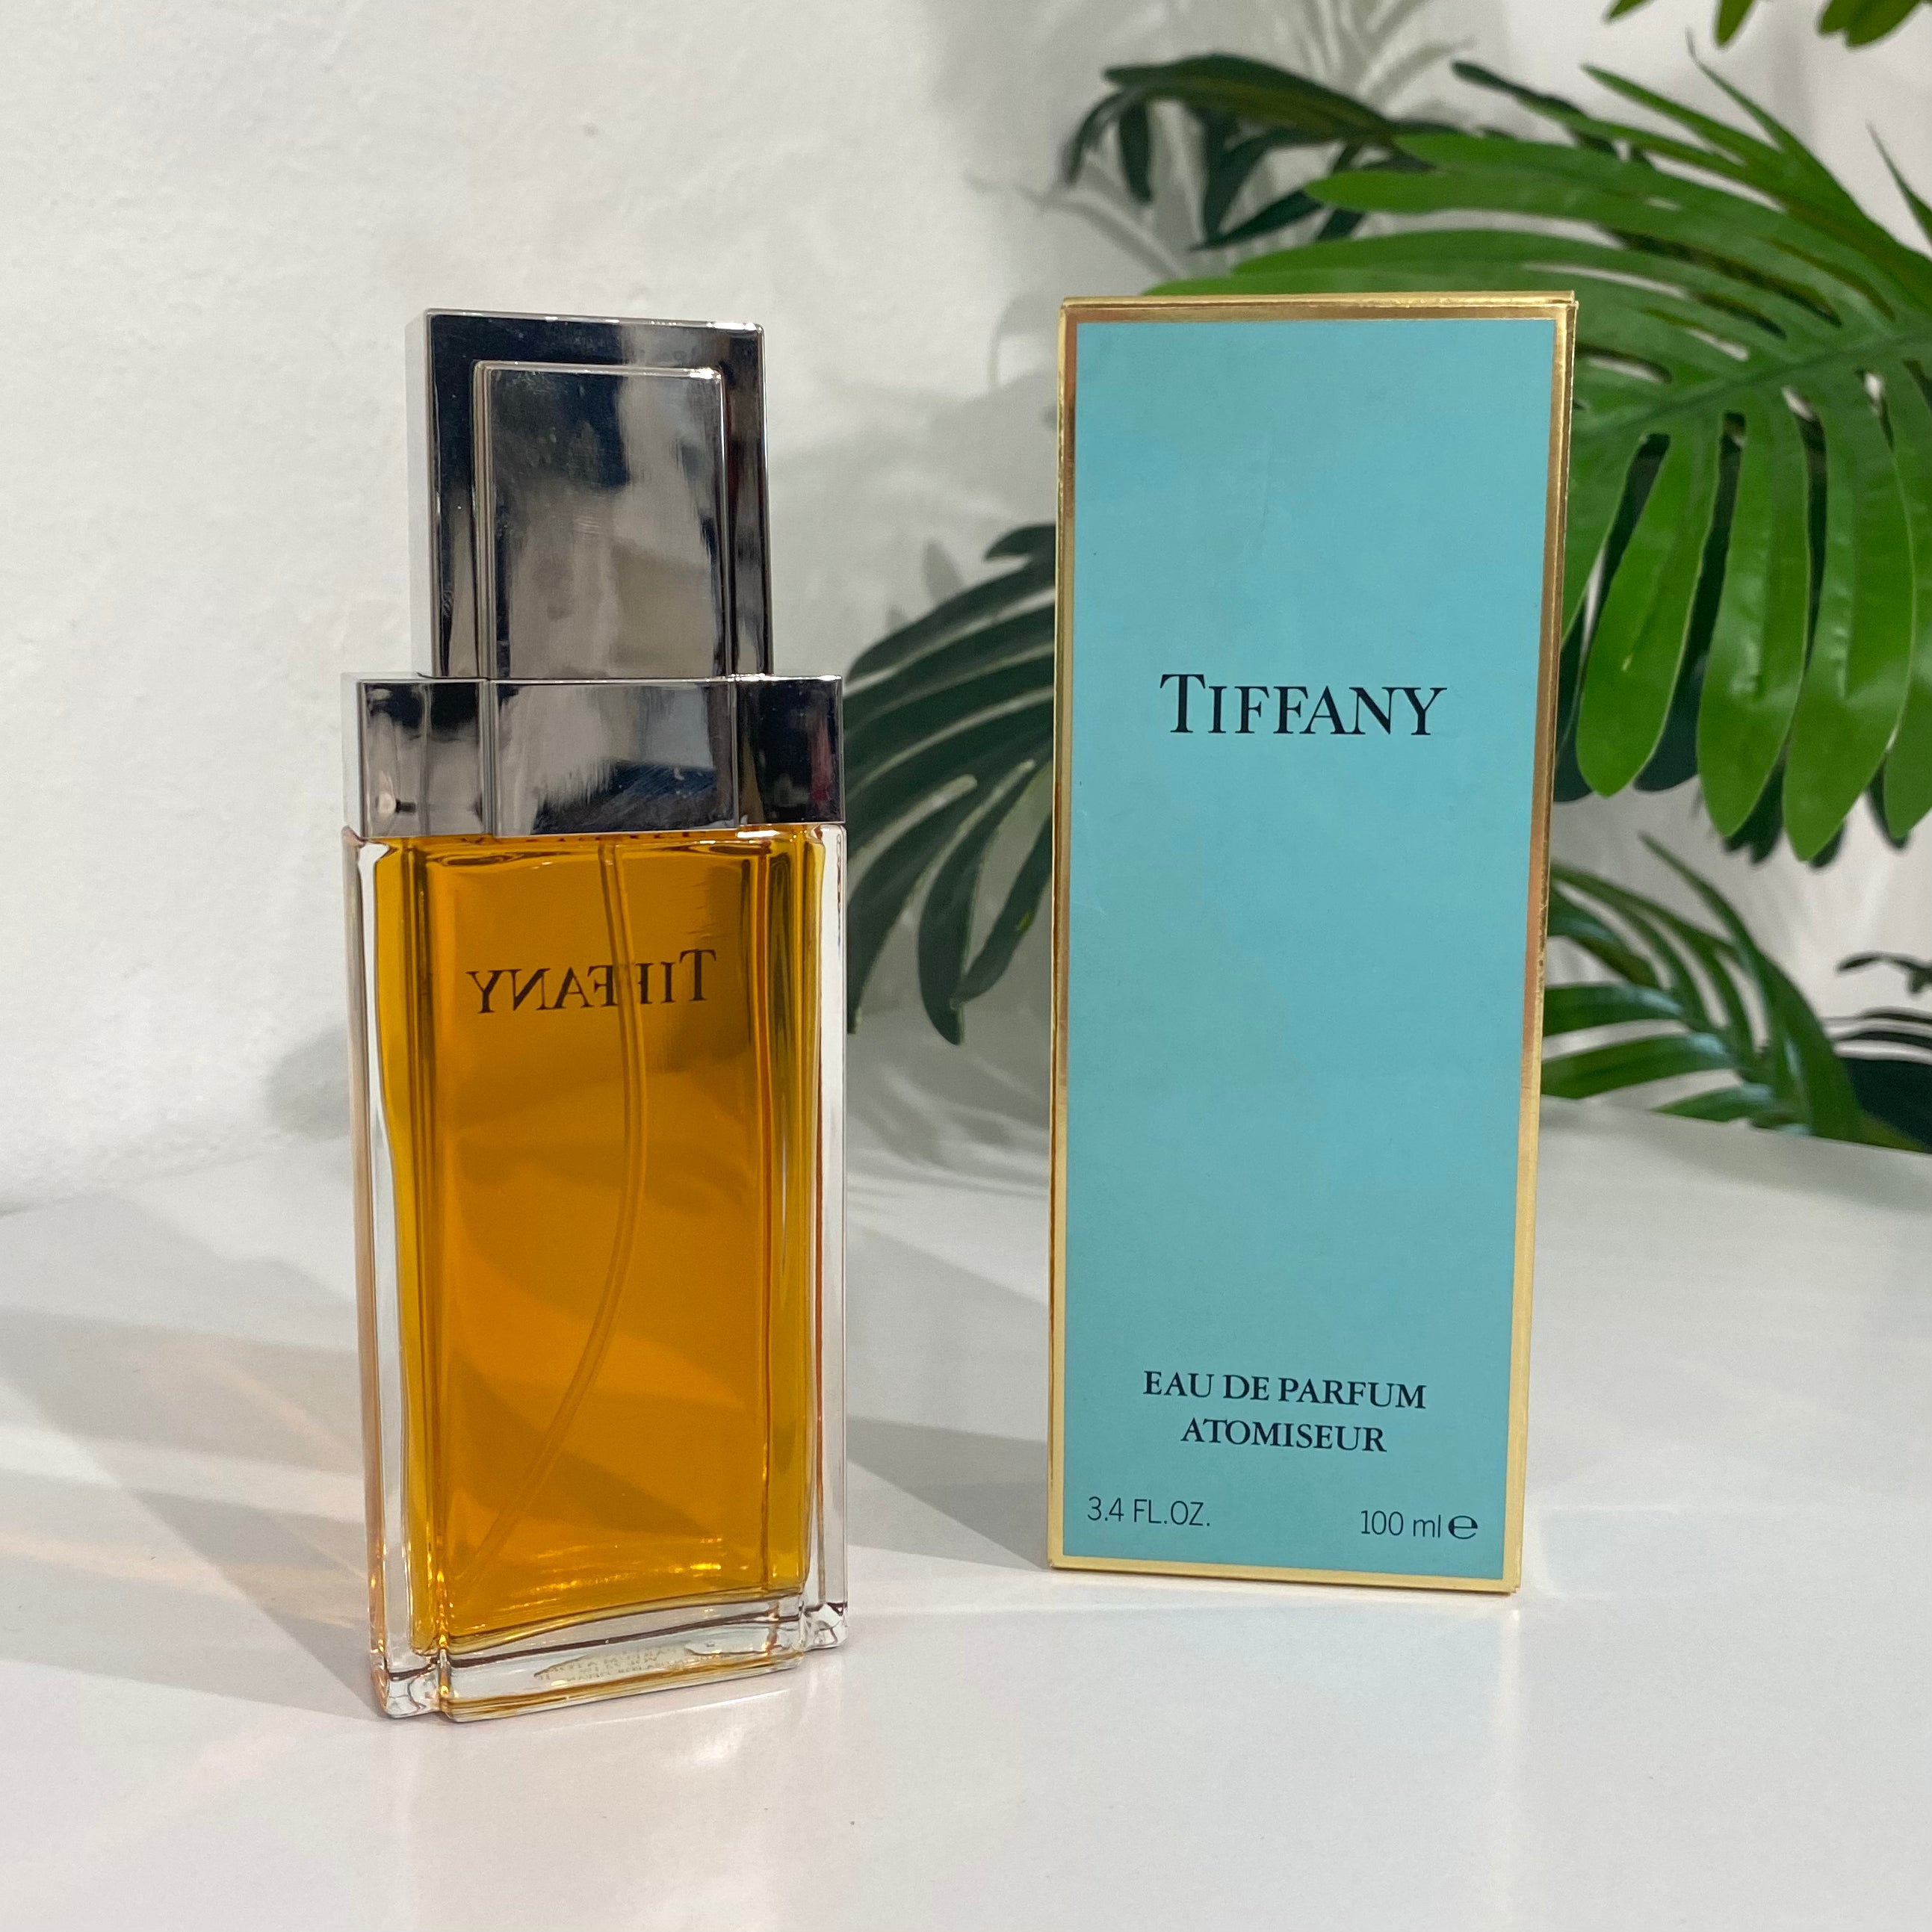 NEW Tiffany Eau de Parfum Atomiseur 3.4 FL OZ. 100 ml – Dina C's